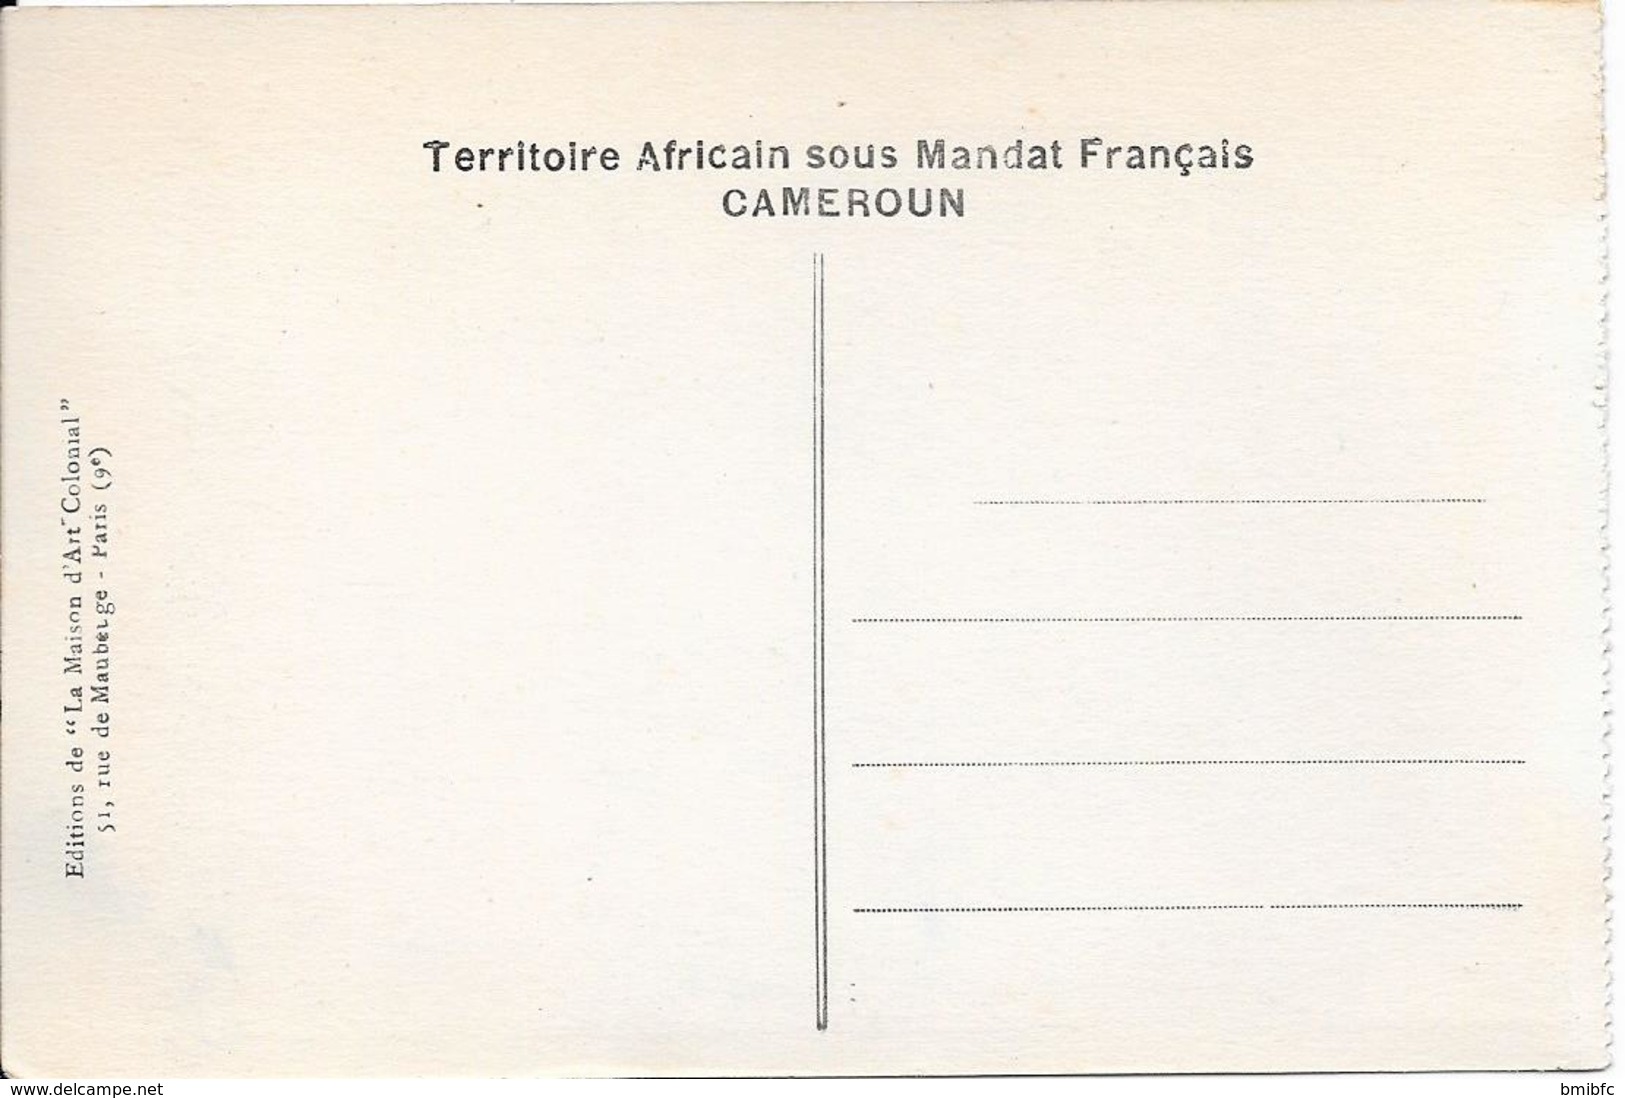 CAMEROUN - Types Bamoun   - (Cliché Agence Togo-Cameroun) - Kameroen